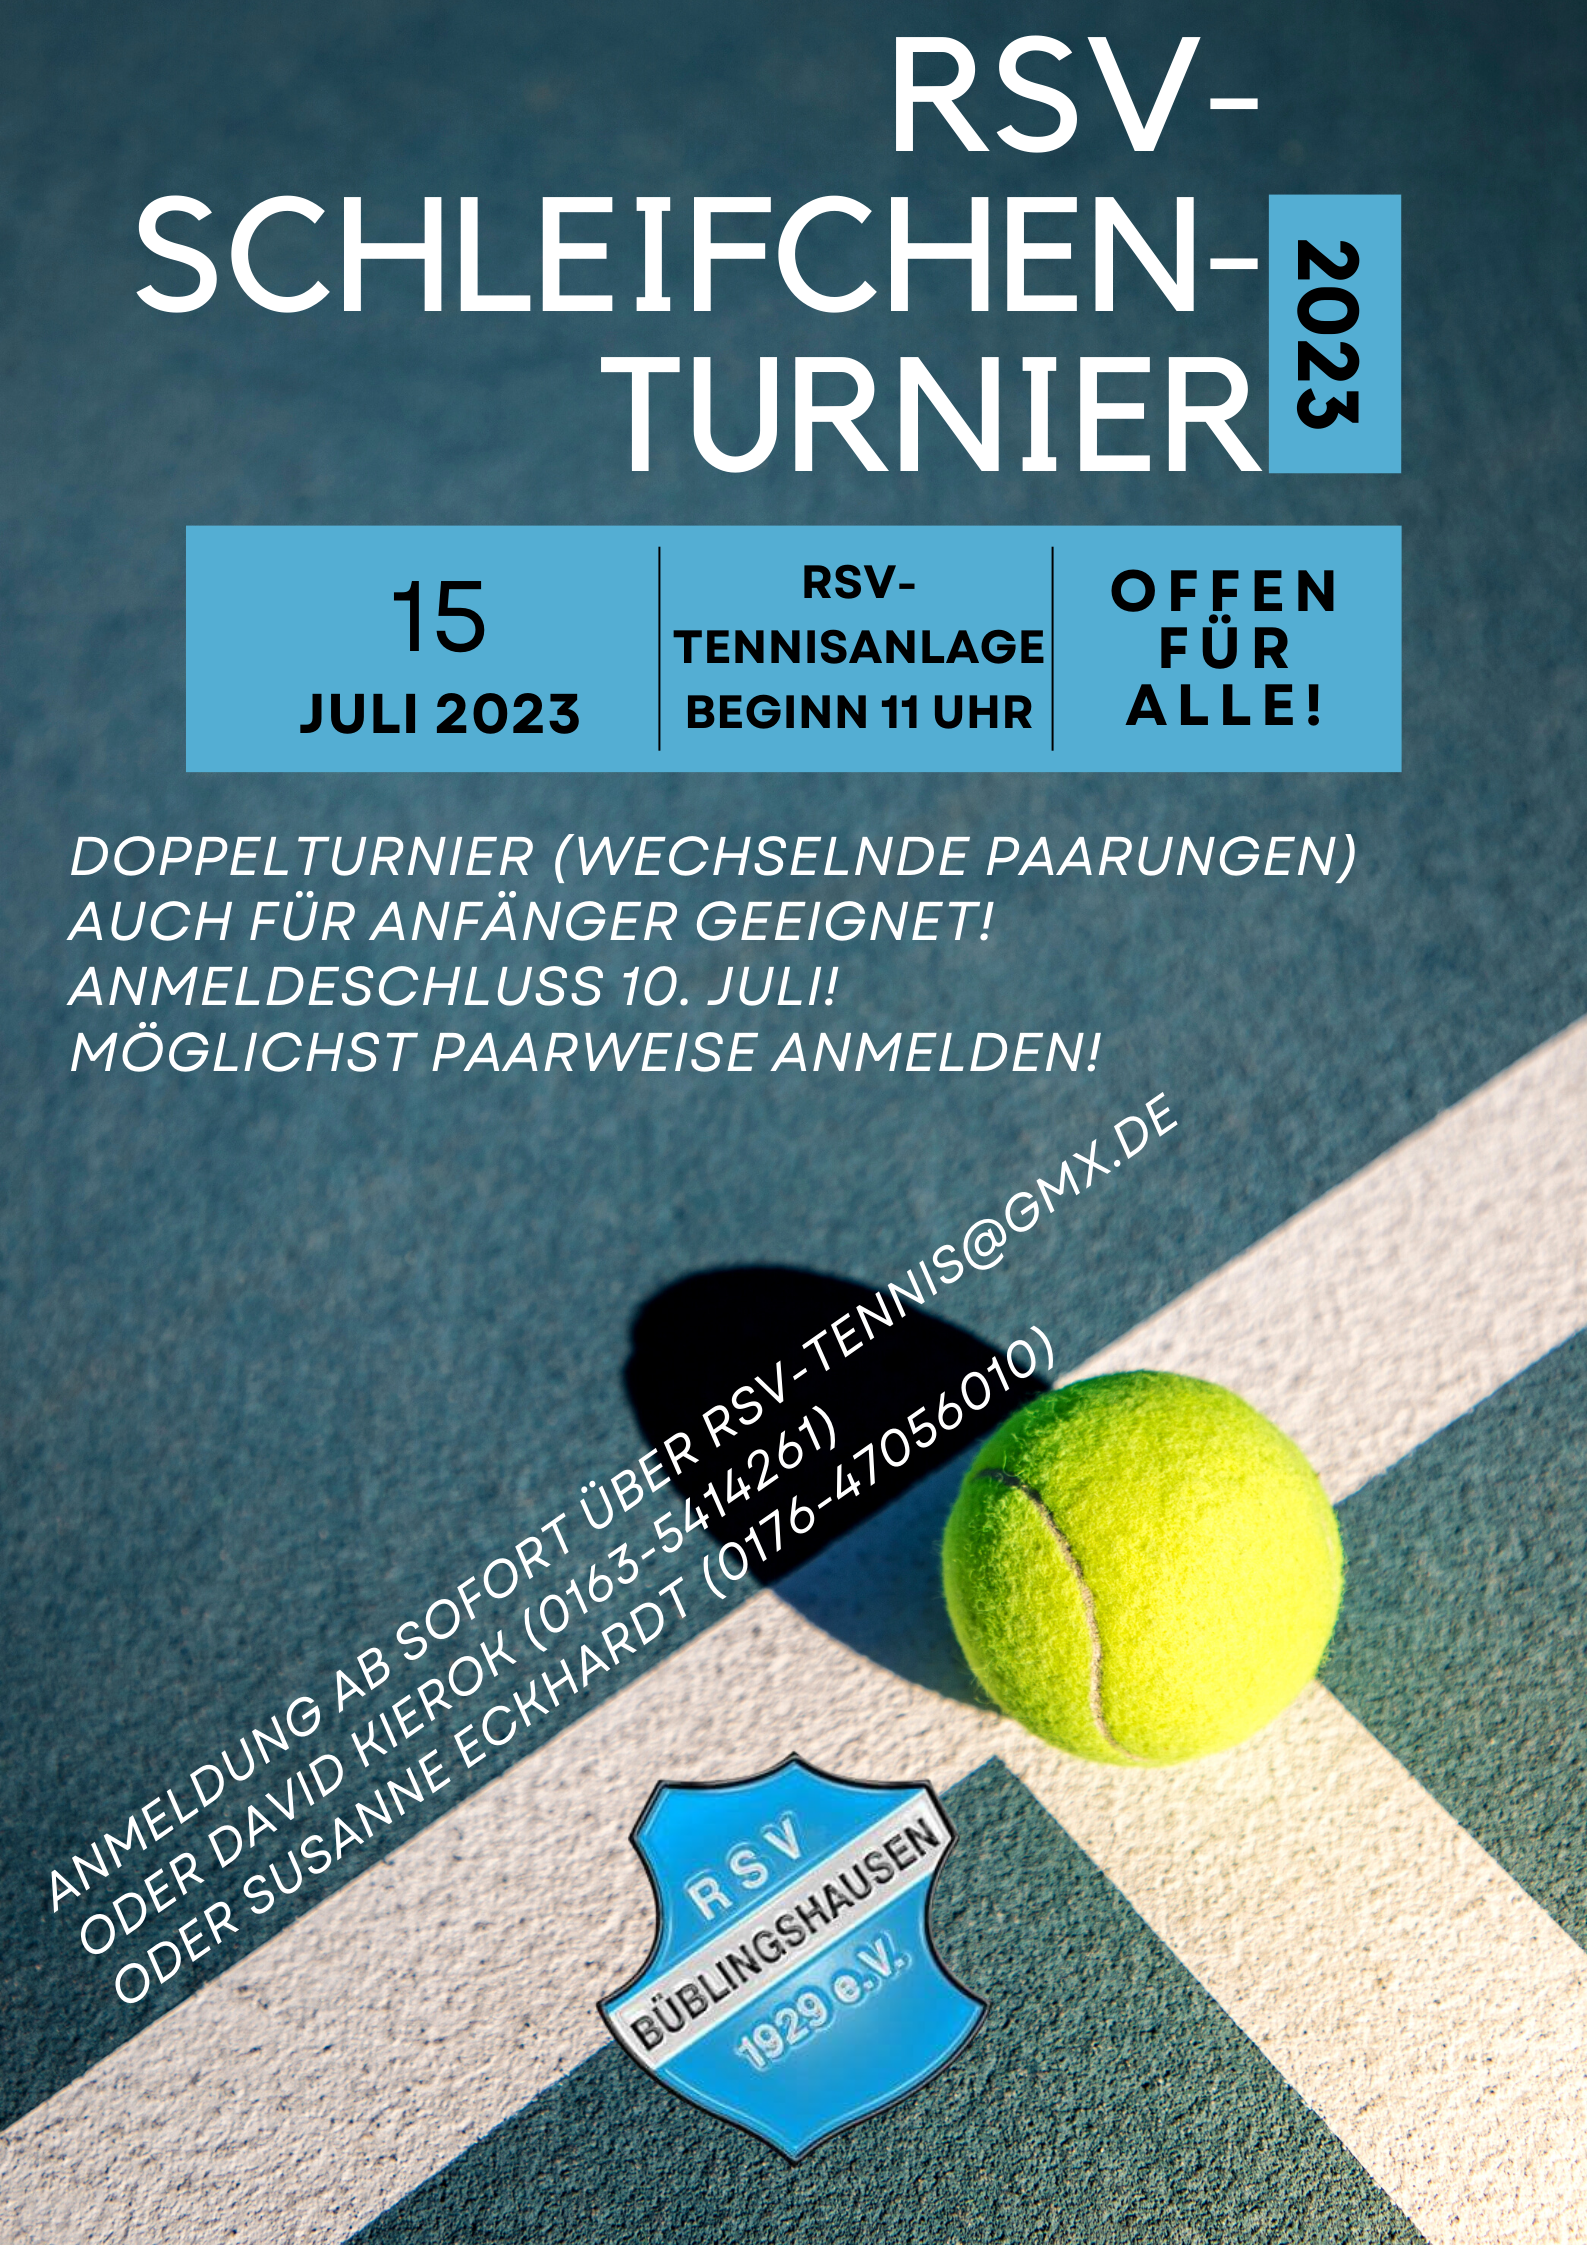 You are currently viewing Tennis: Schleifchenturnier für alle am 15. Juli